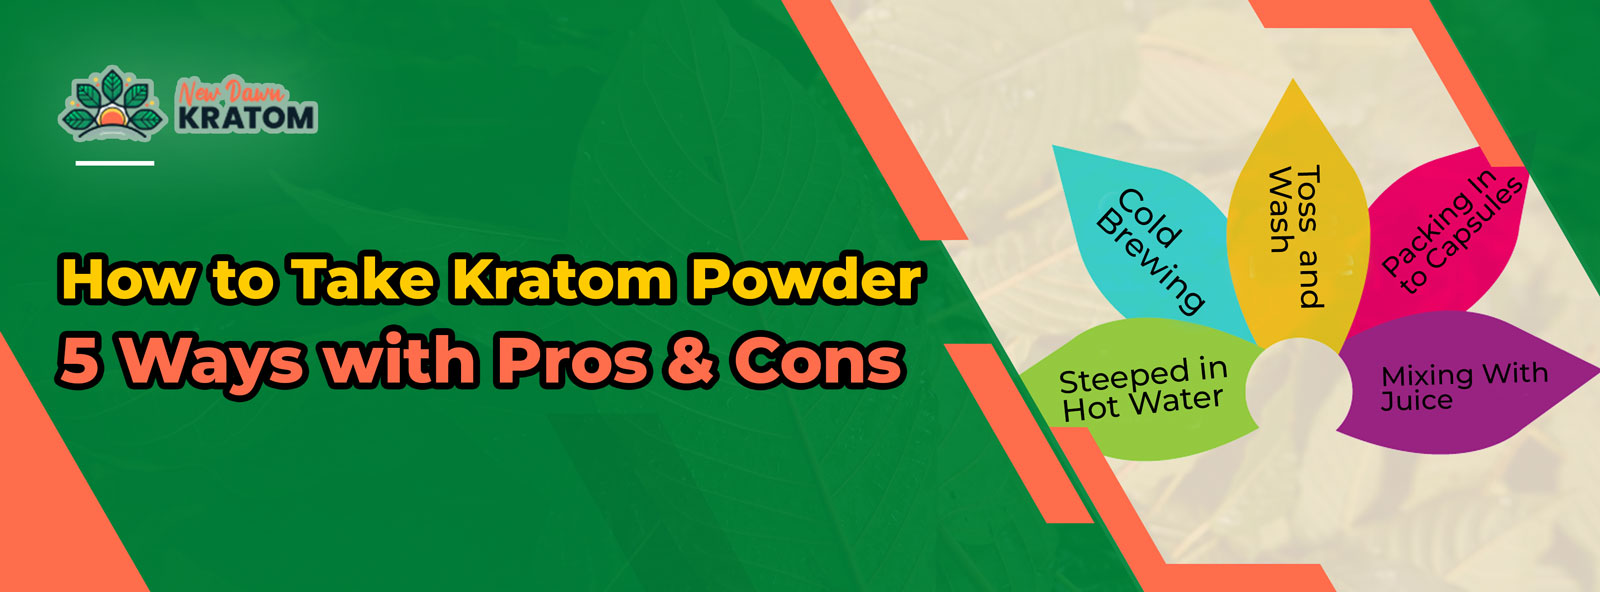 how to take kratom powder – 5 ways with pros & cons